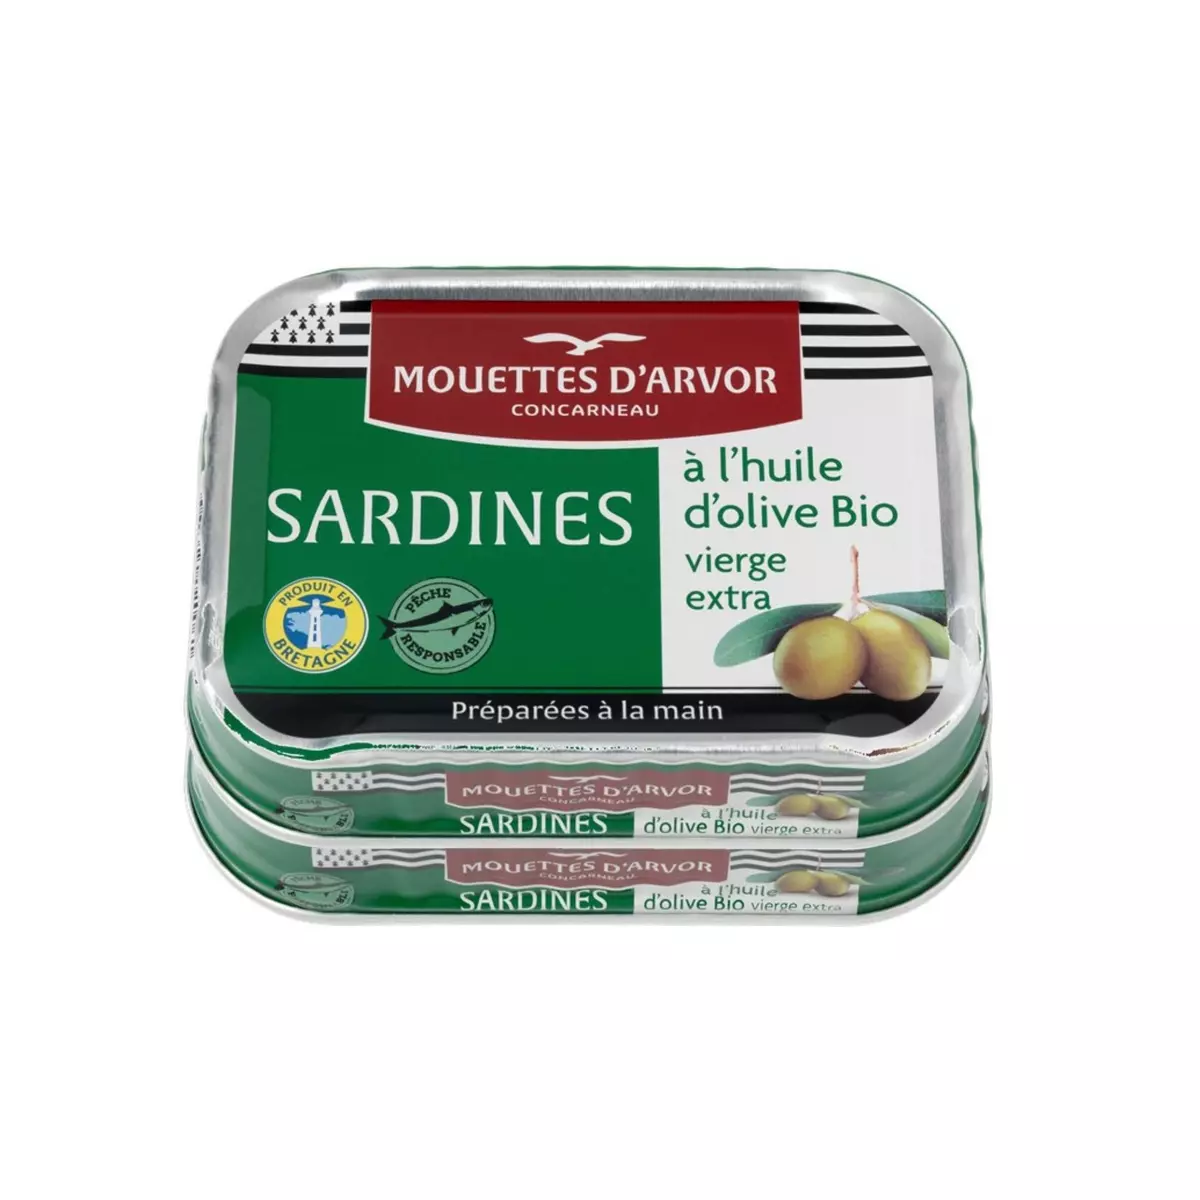 LES MOUETTES D'ARVOR Sardines à l'huile d'olive bio vierge extra 2x115g